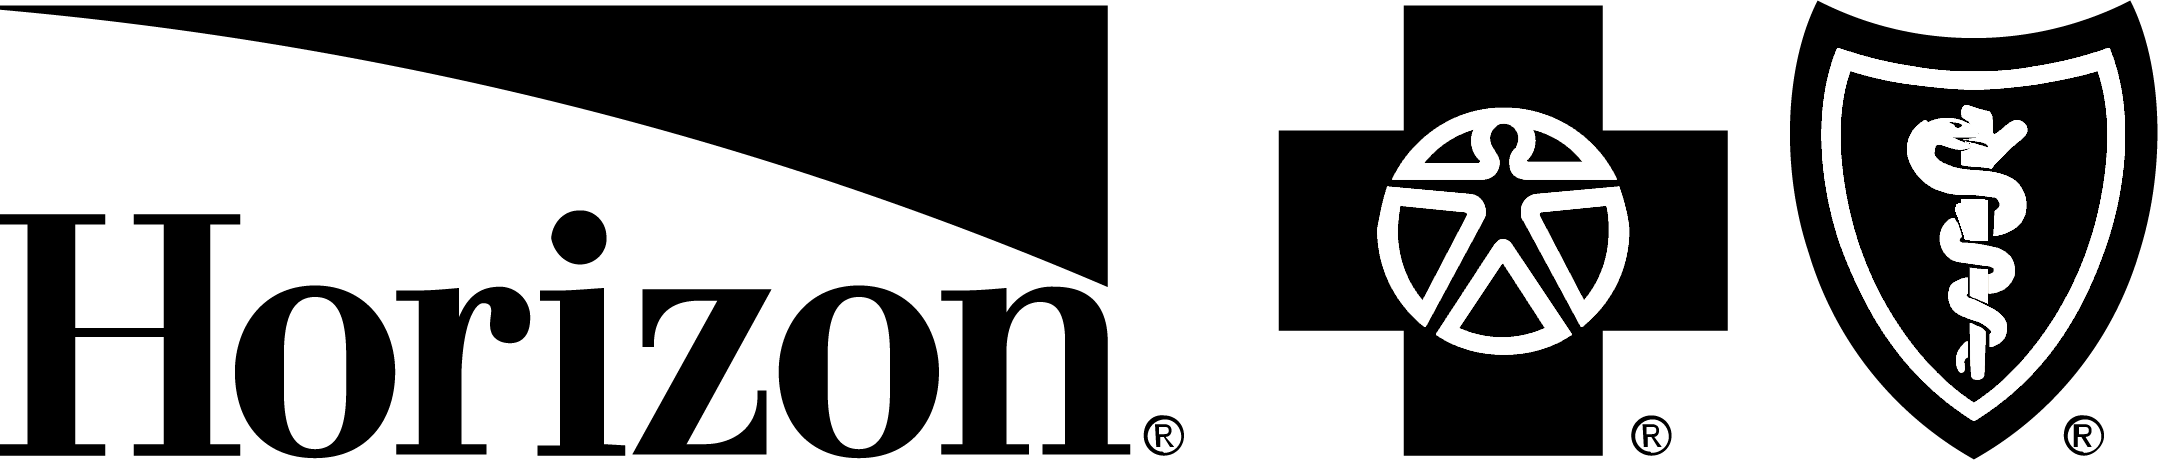 Black horizon logo png.png